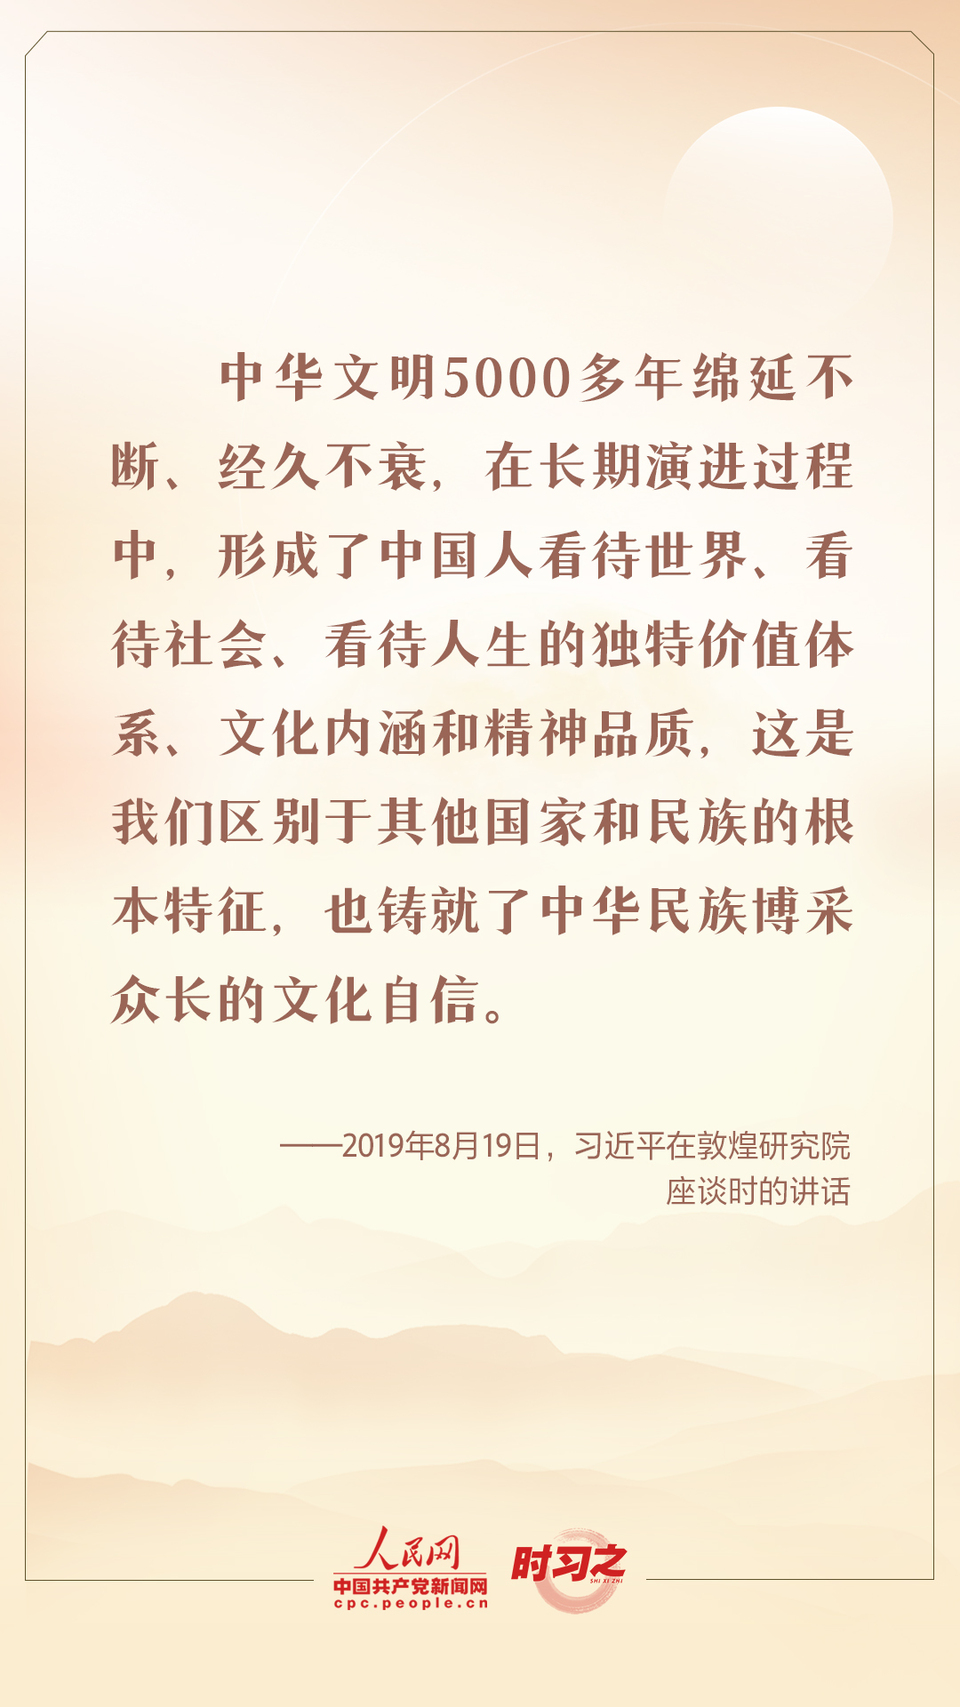 时习之 迎中秋 话传统 跟总书记一起坚定中华文化自信-万博·体育(ManBetX)